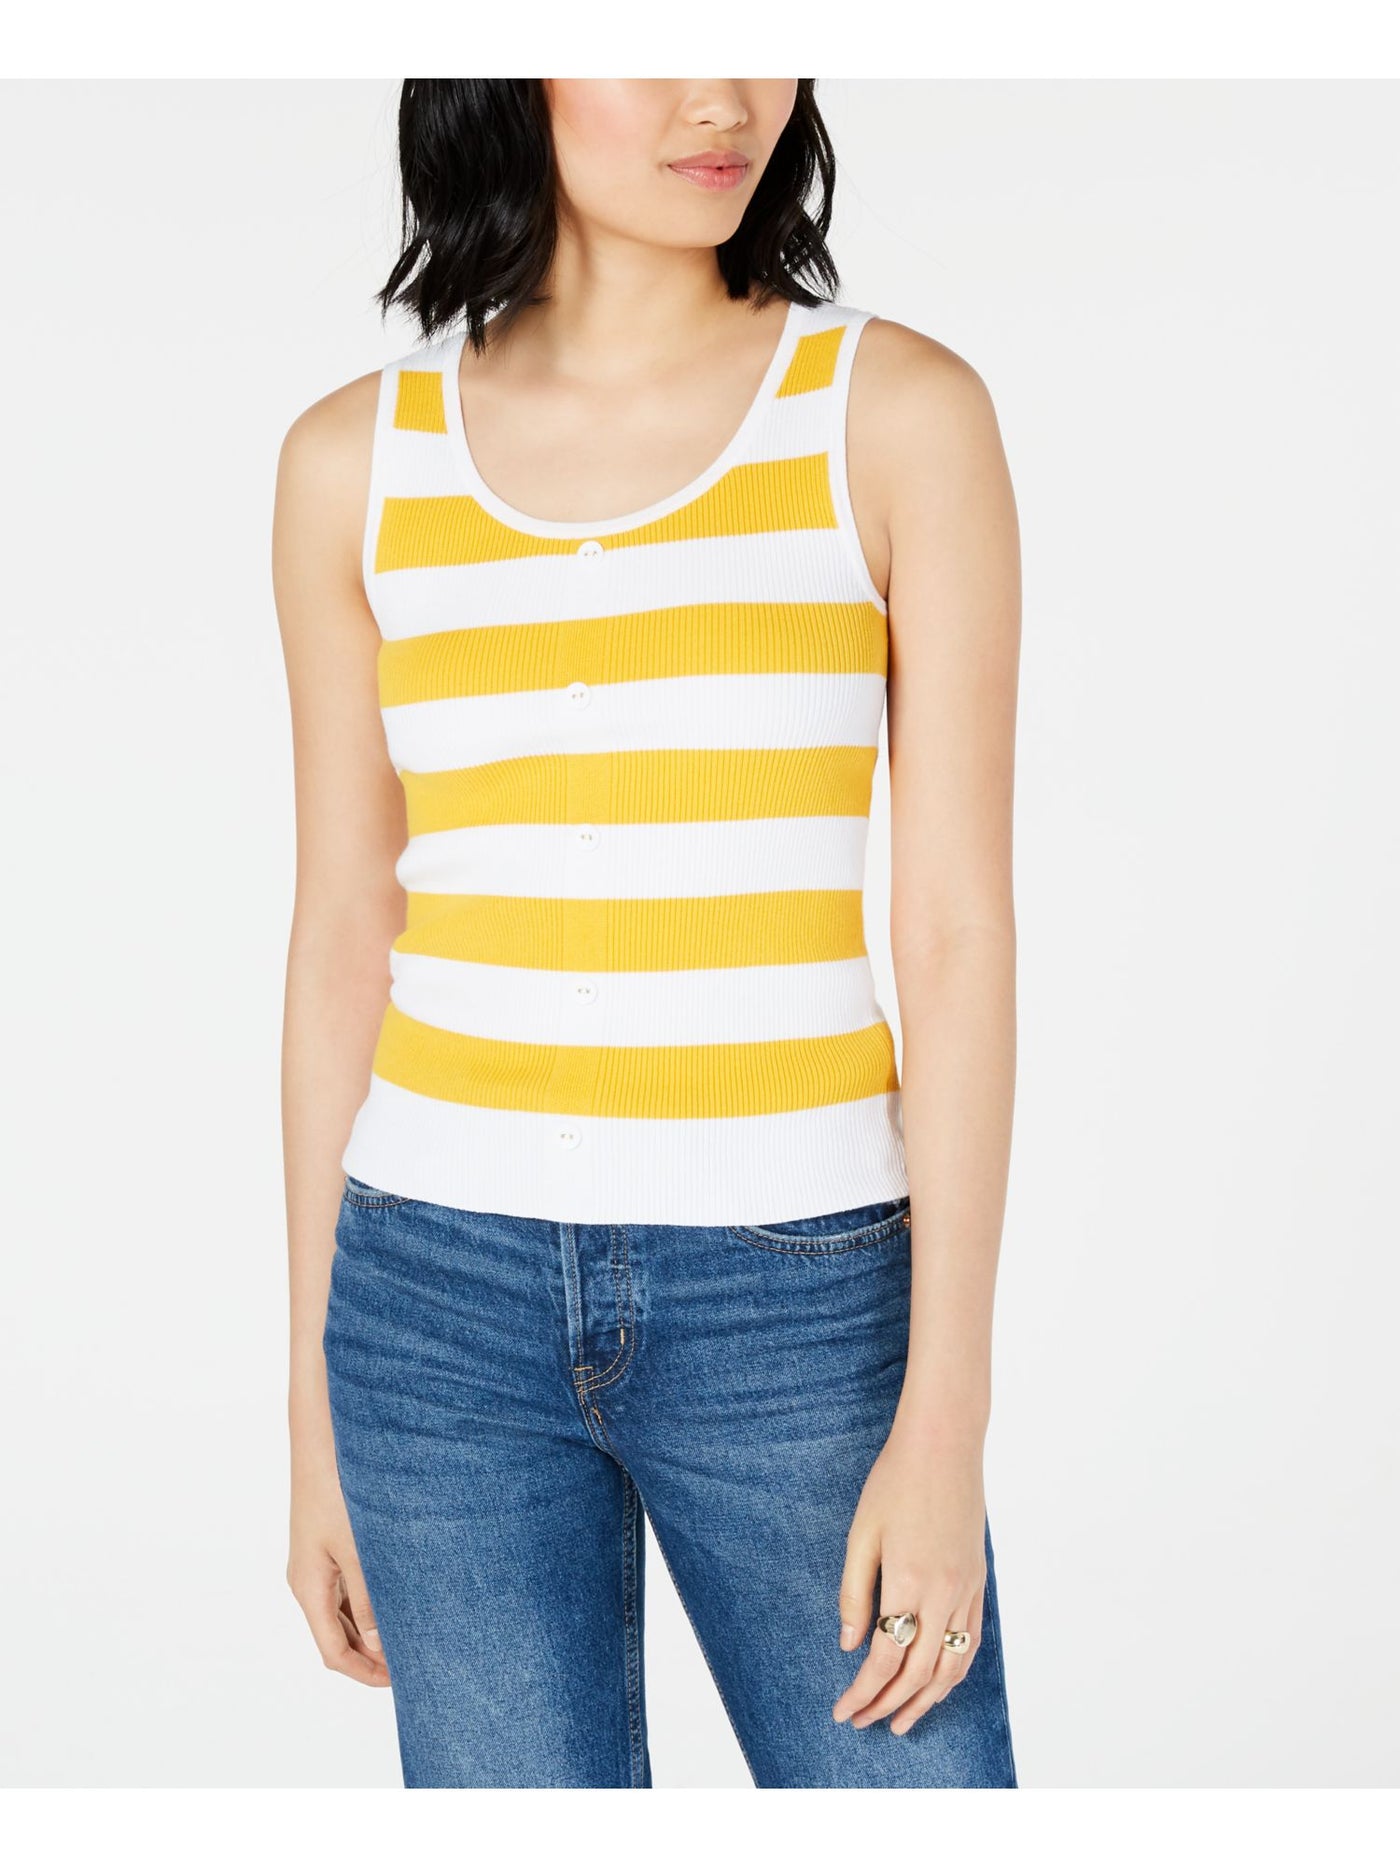 MAISON JULES Womens Yellow Striped Sleeveless Scoop Neck Tank Sweater Size: XS